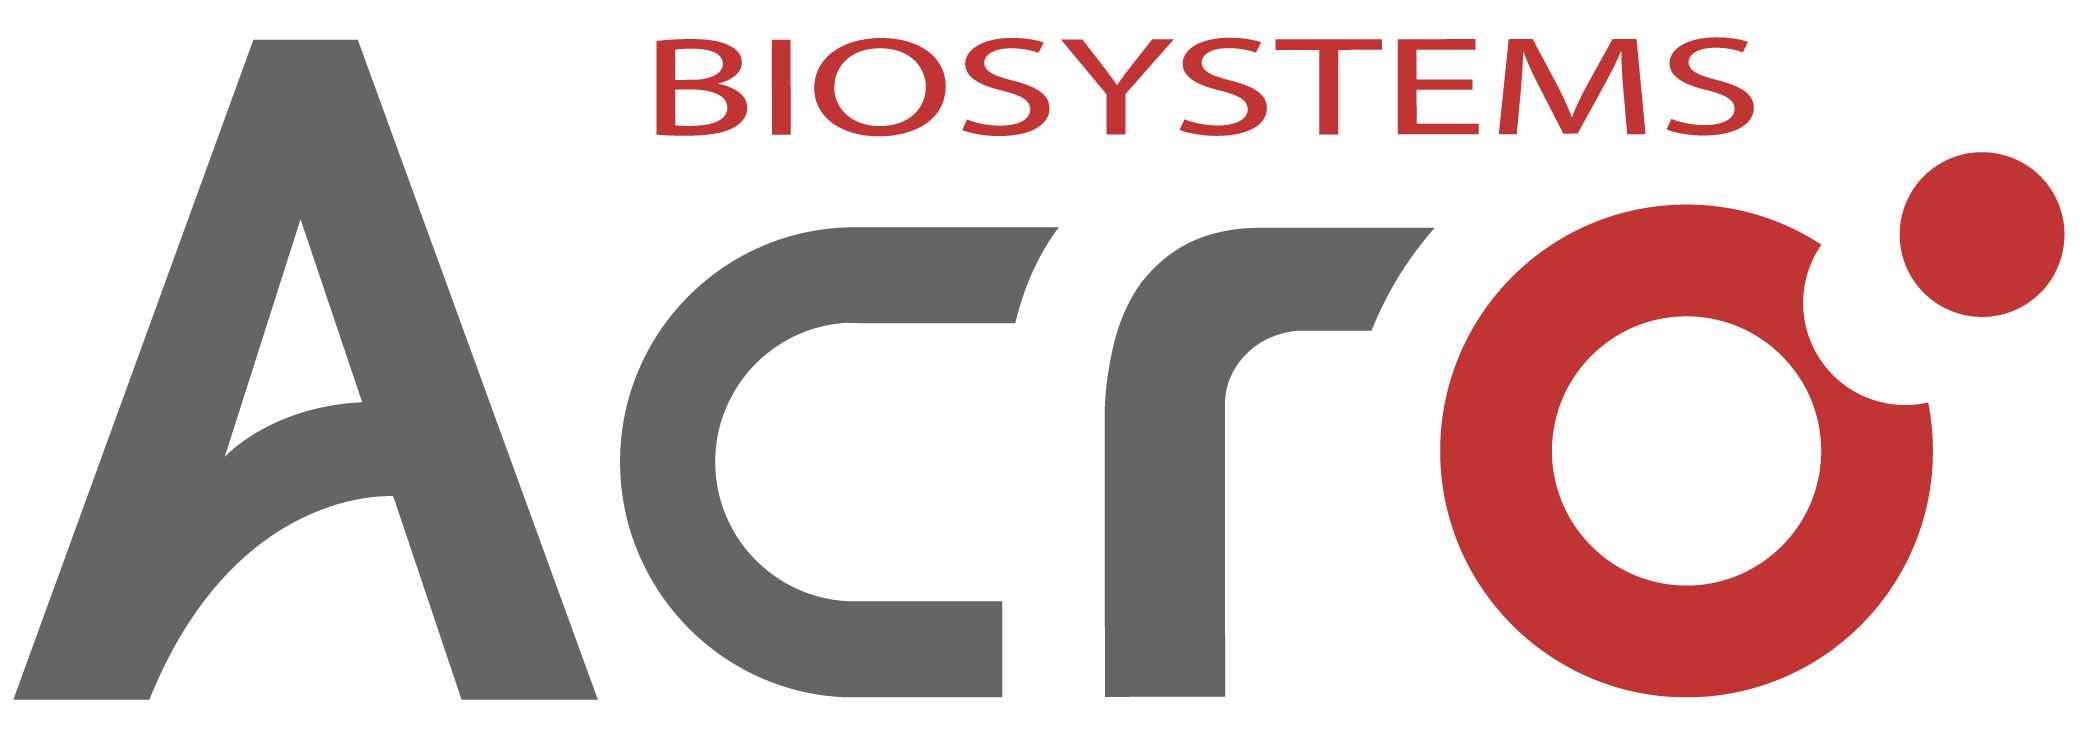 ACRO Biosystems